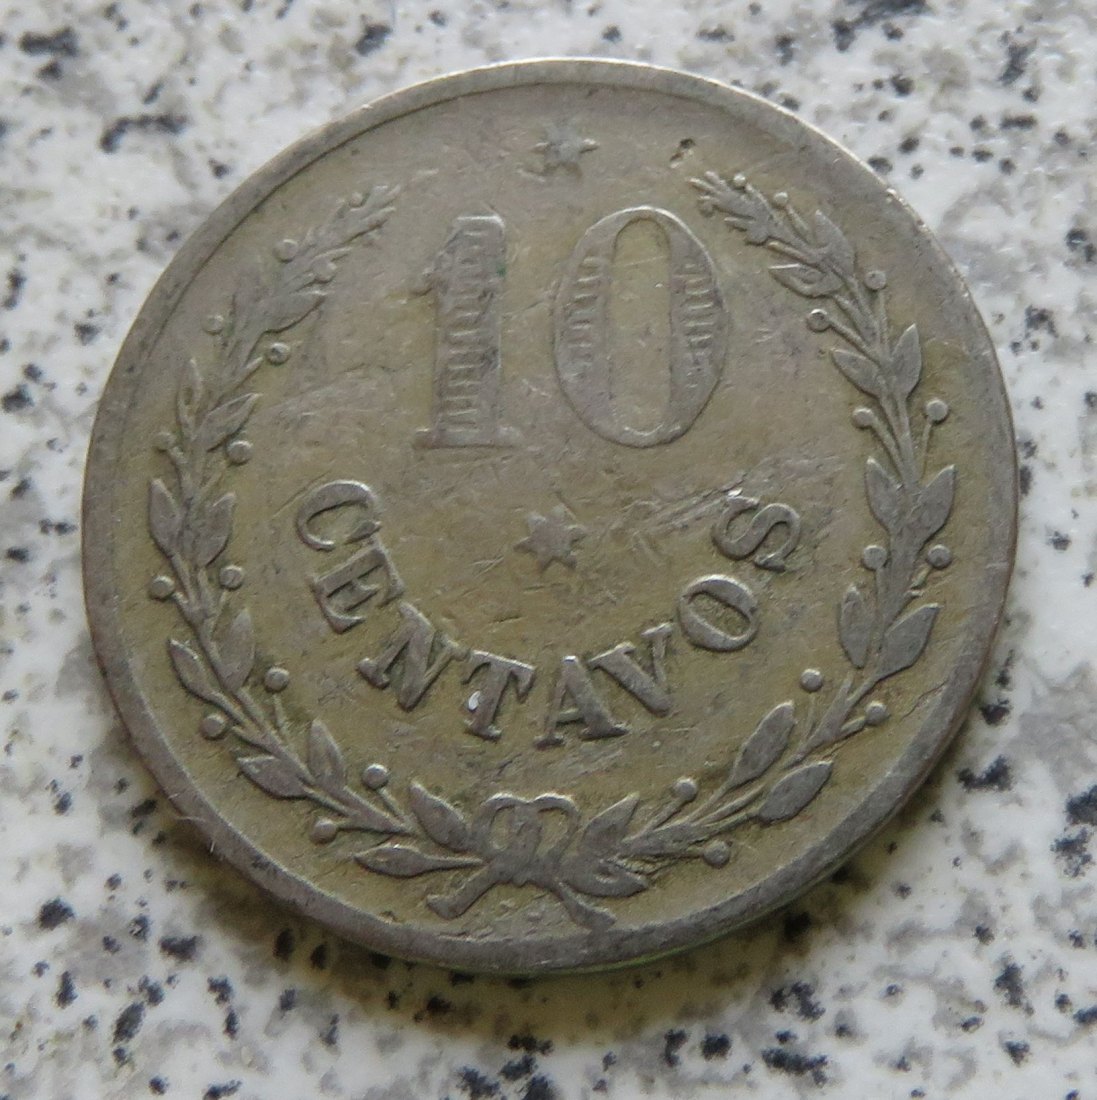  Kolumbien Lazarettmünze 10 Centavos 1921, selten   